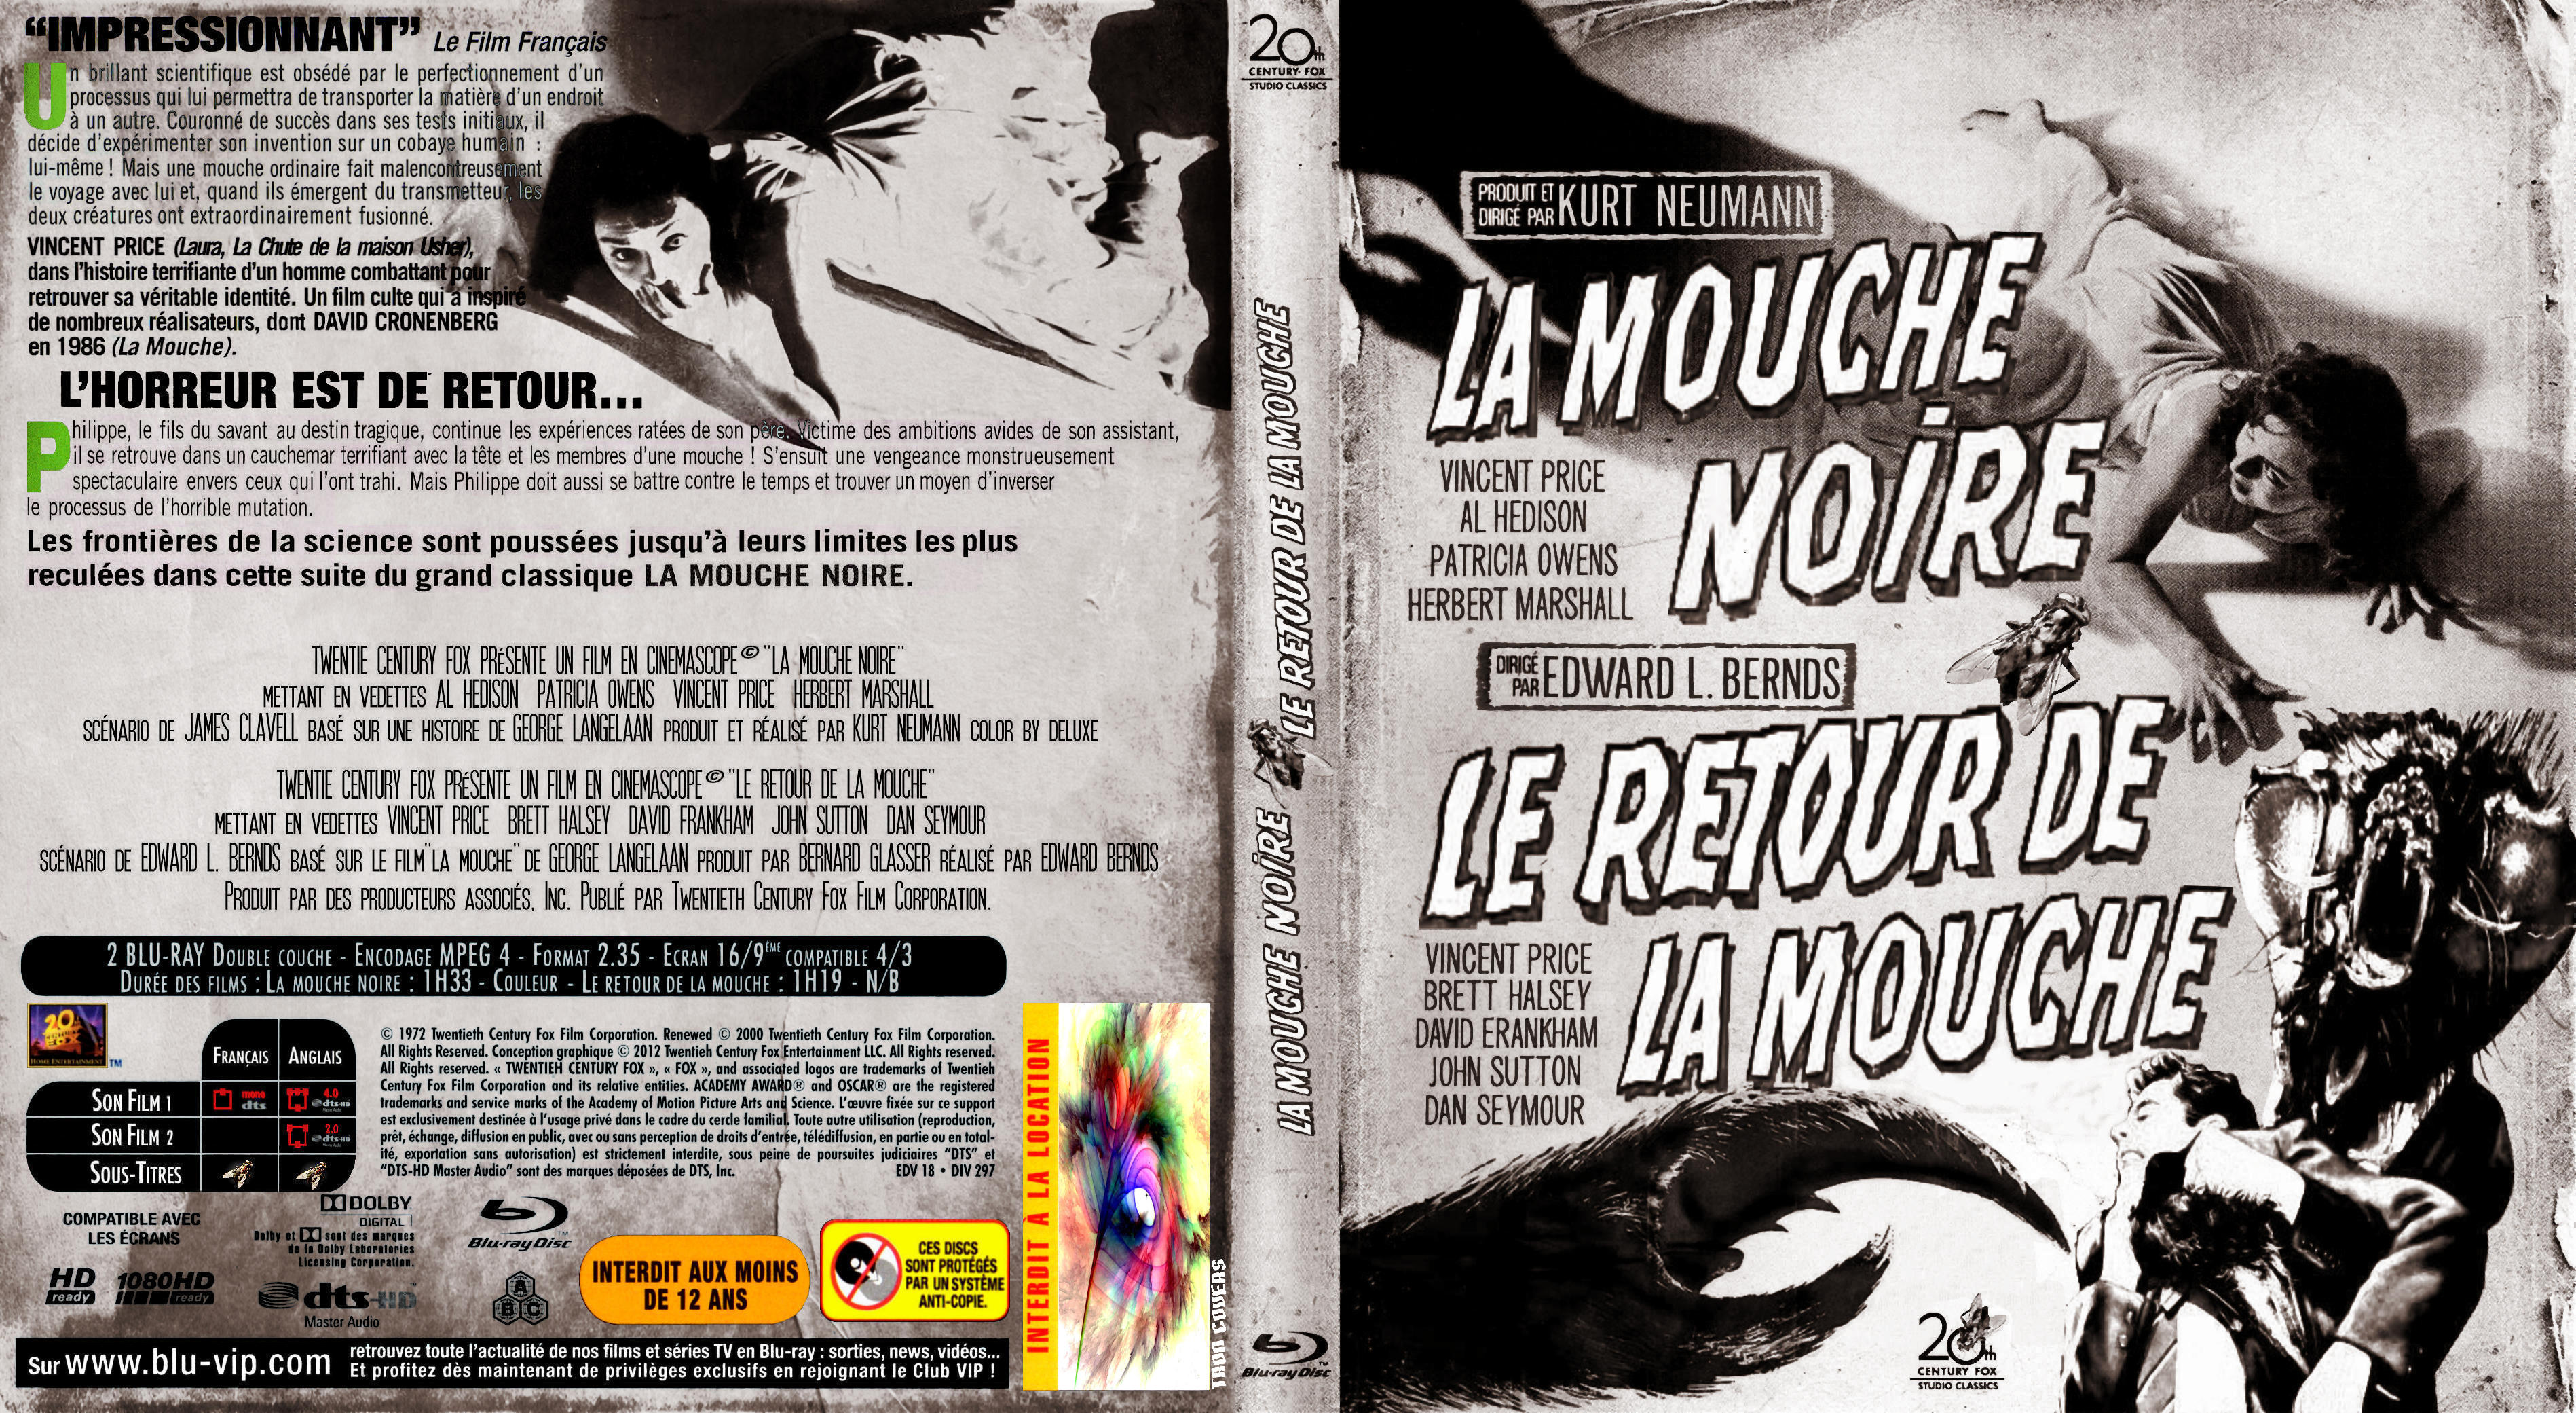 Jaquette DVD La mouche coffret custom 1958-1959 (BLU-RAY)